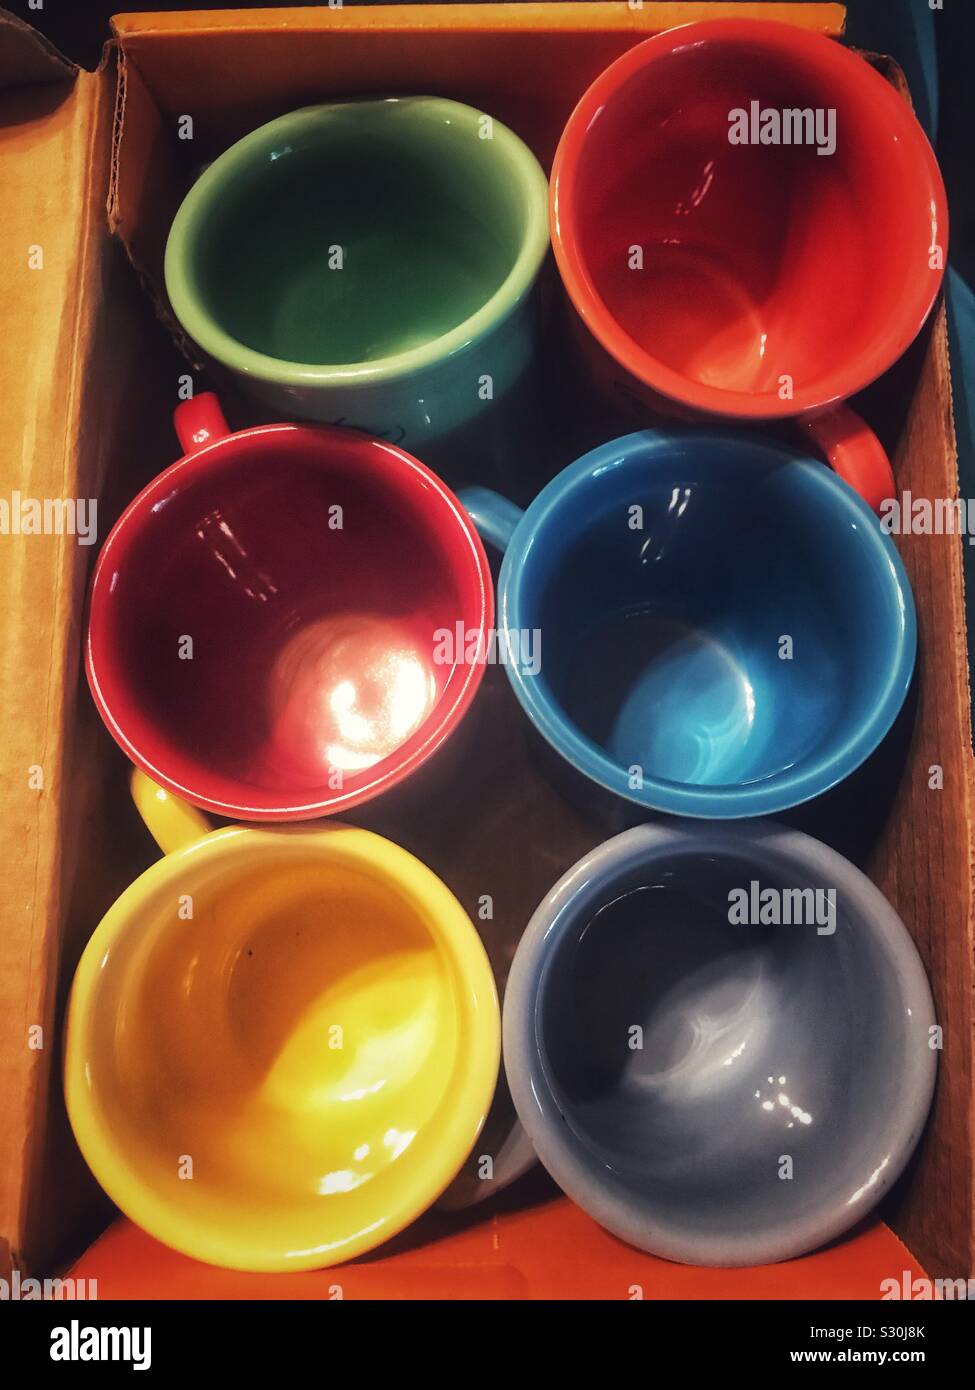 Immagine luminosa di 6 ceramiche colorate tazze confezionato in una scatola Foto Stock